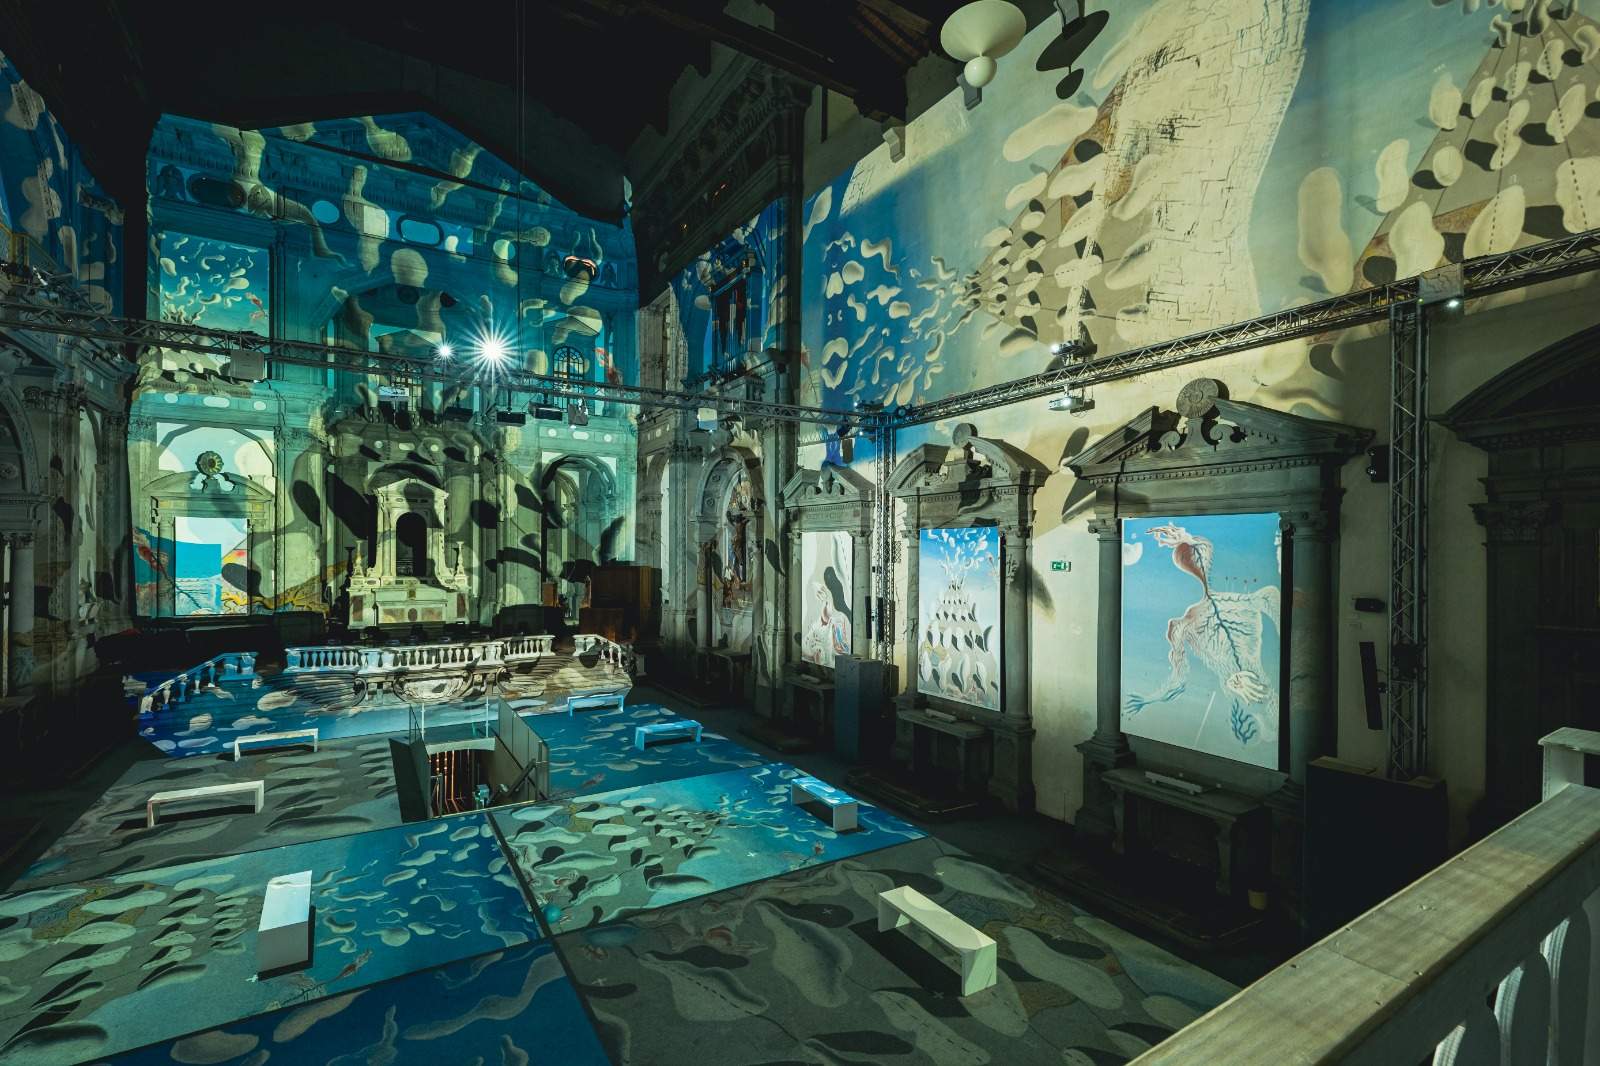 Inside Dalí: orari prolungati e un evento speciale per lo spettacolo immersivo dedicato al maestro surrealista